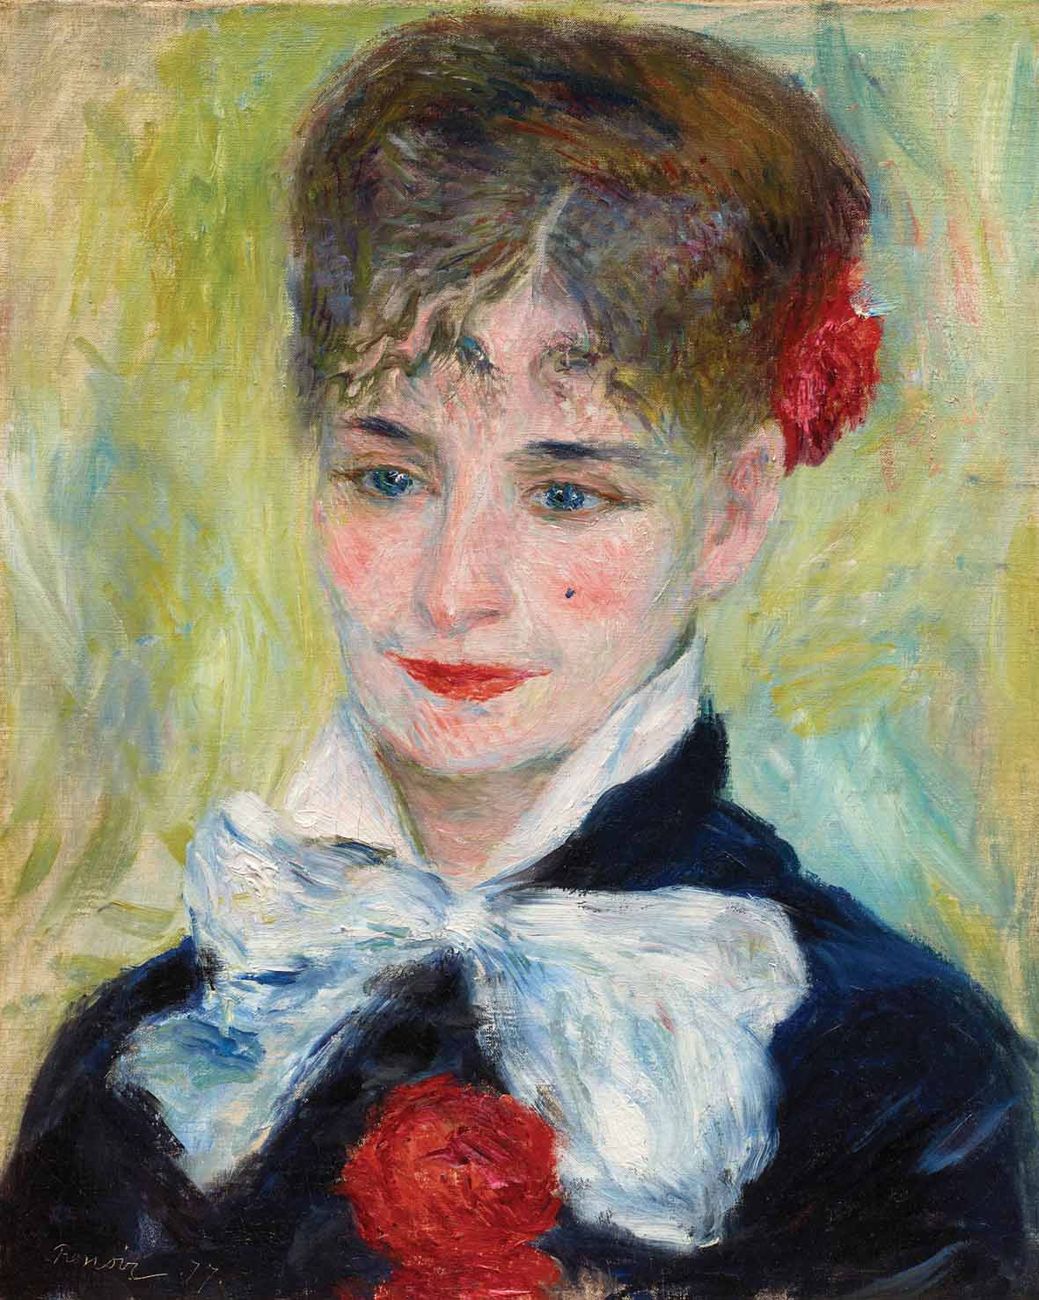 Pierre+Auguste+Renoir-1841-1-19 (988).jpg